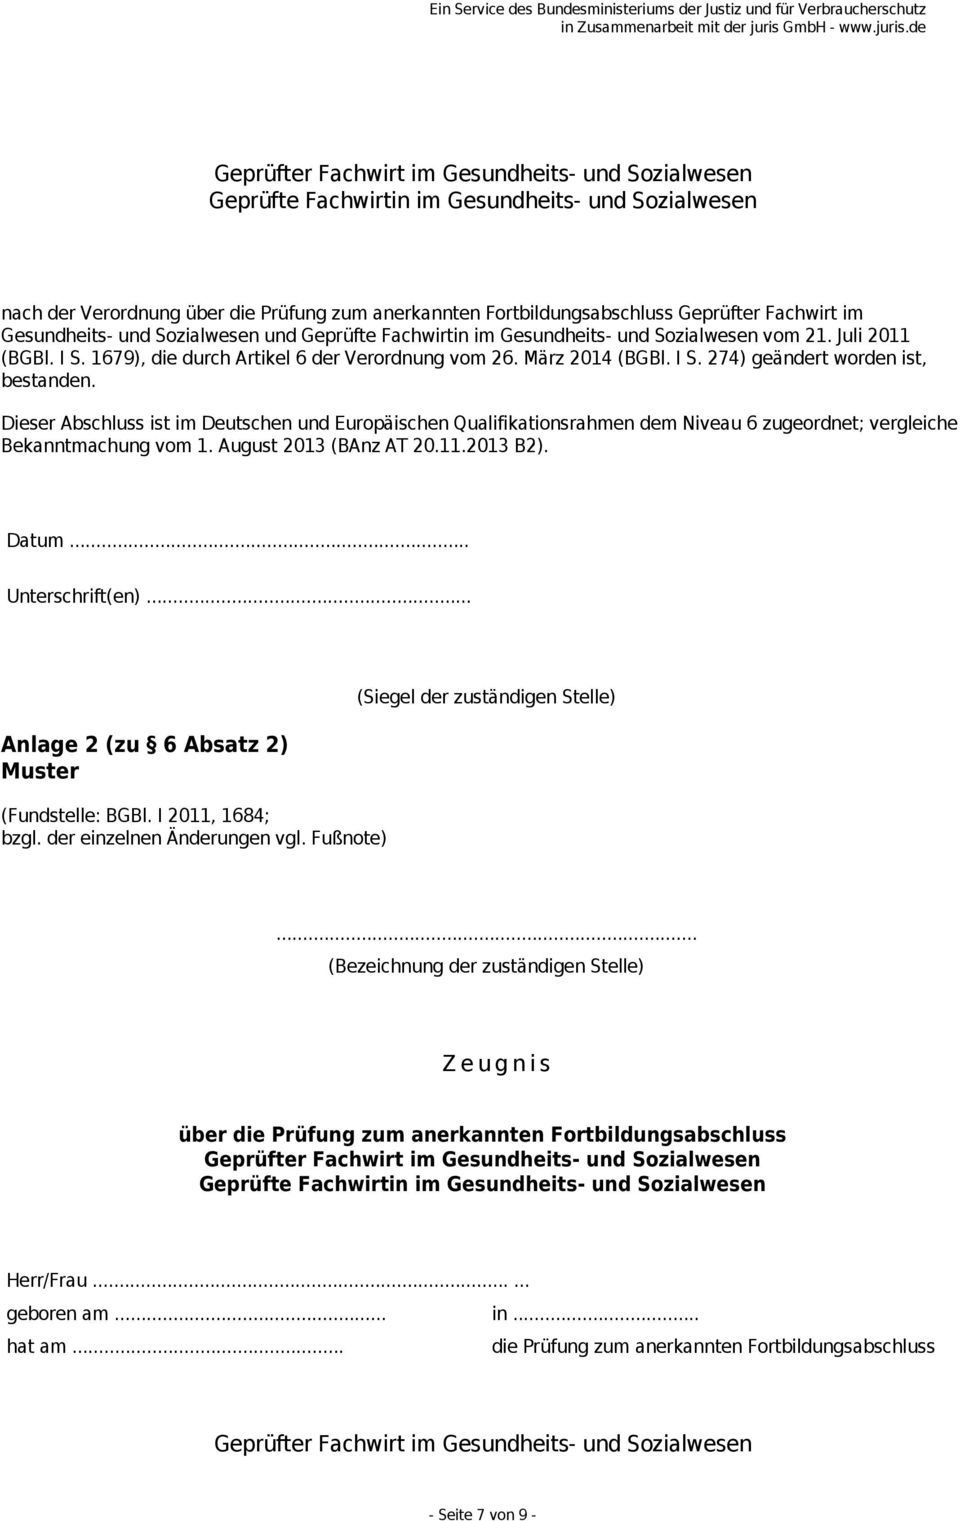 Dieser Abschluss ist im Deutschen und Europäischen Qualifikationsrahmen dem Niveau 6 zugeordnet; vergleiche Bekanntmachung vom 1. August 2013 (BAnz AT 20.11.2013 B2). Datum... Unterschrift(en).